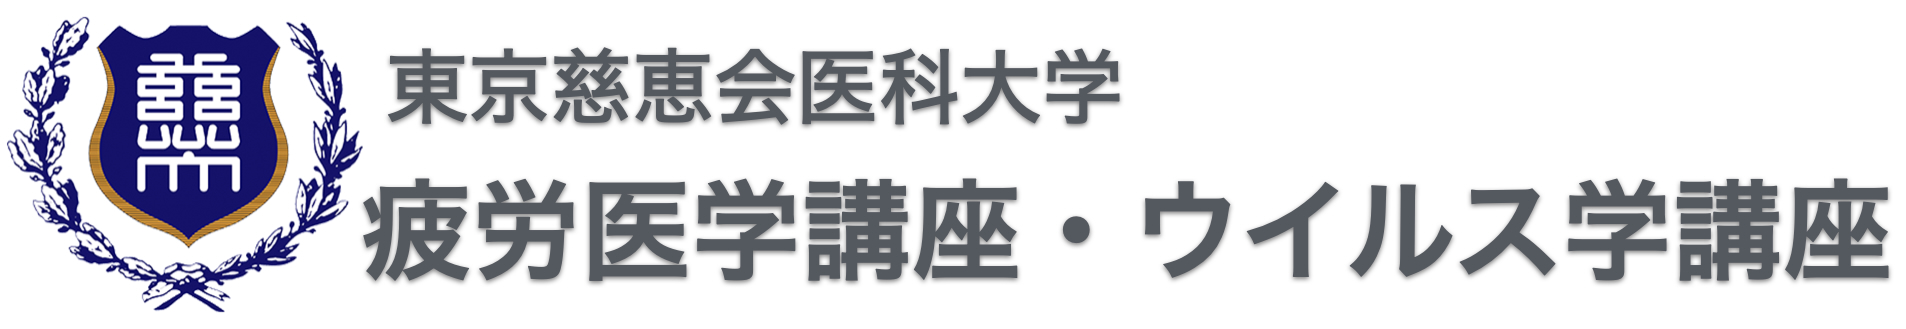 Logo for 東京慈恵会医科大学ウイルス学講座